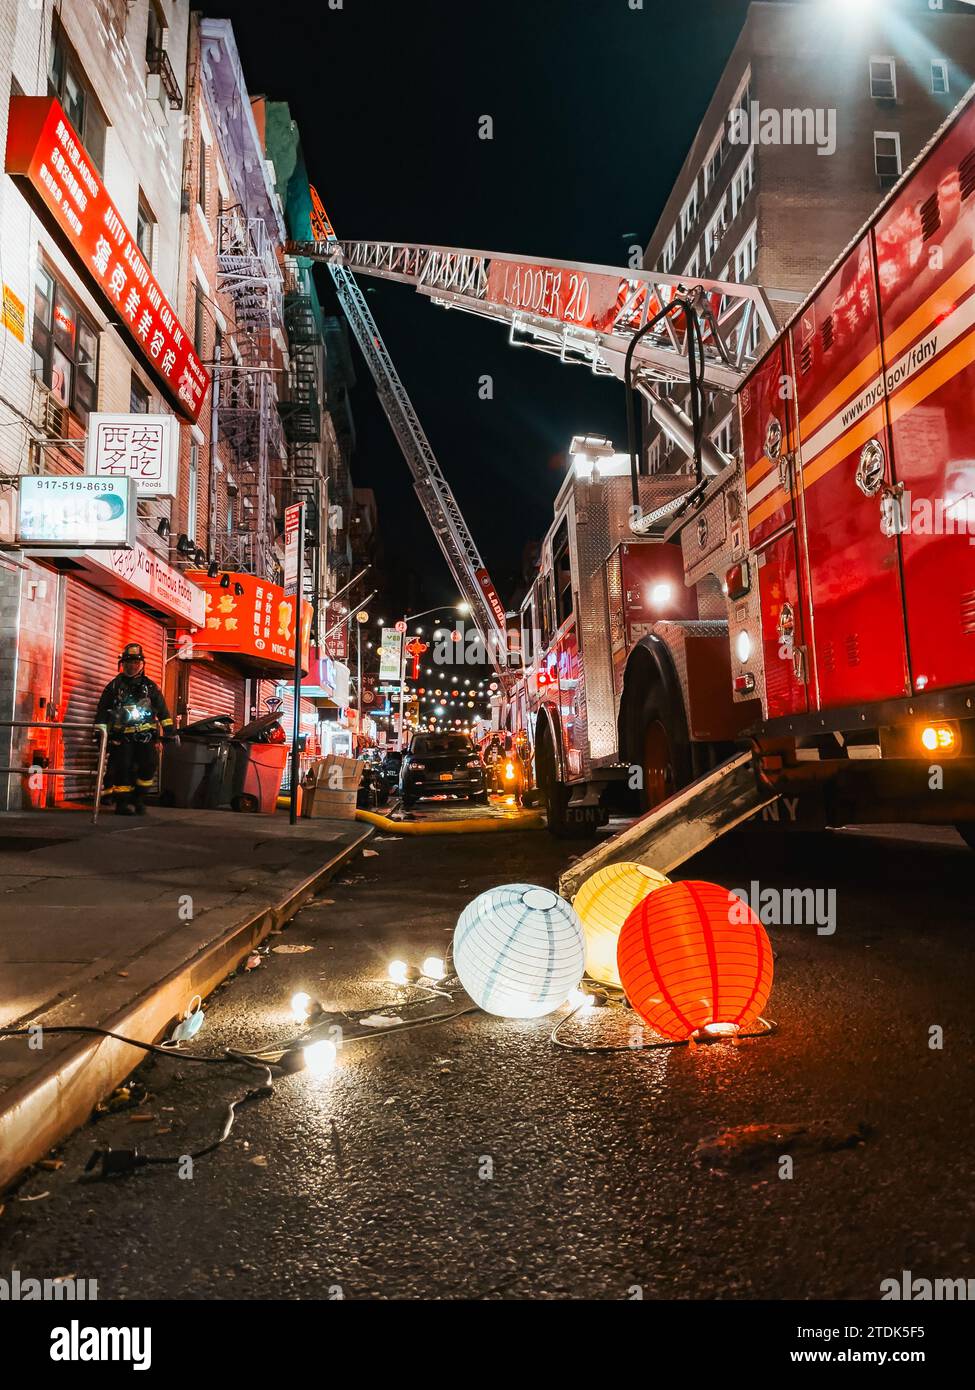 Chinesische Laternen lagen auf dem Boden in Chinatown, NYC, nachdem sie entfernt wurden, damit ein FDNY-Lkw seine Leiter ausfahren konnte, während er einen Brand bekämpfte Stockfoto